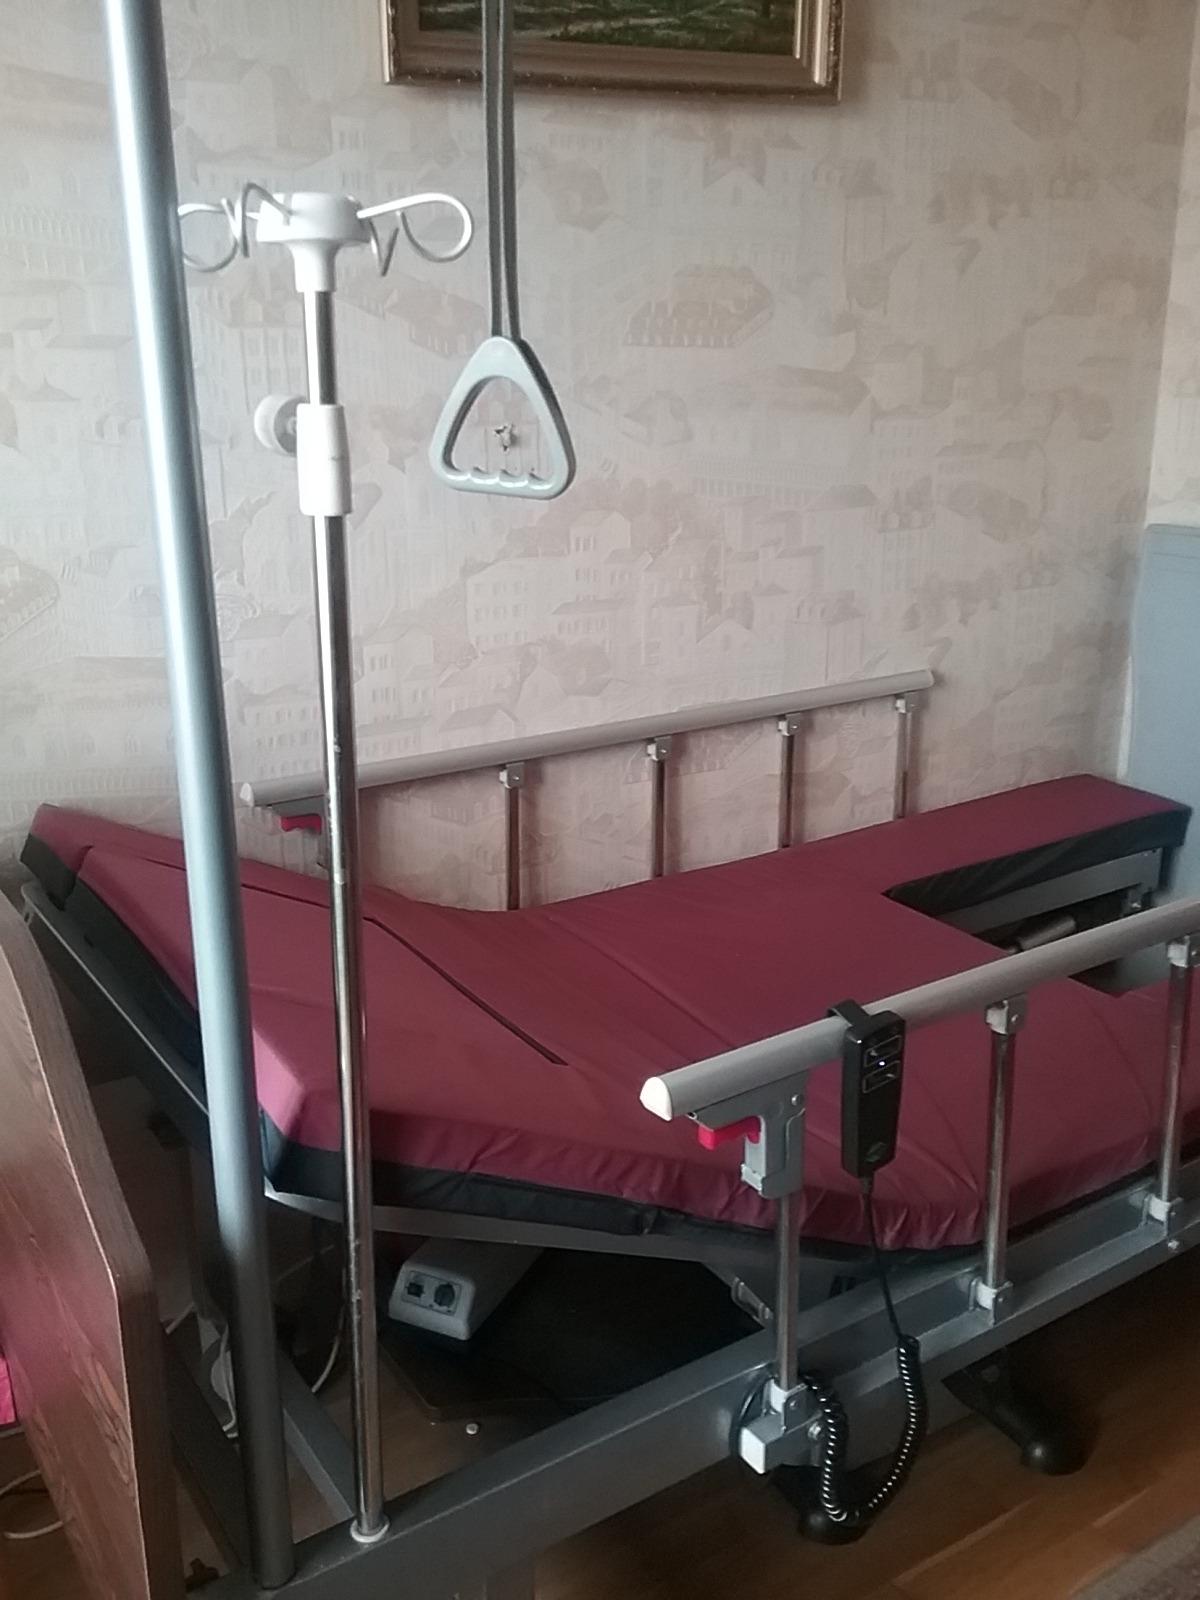 кровать функциональная медицинская электрическая yg 2 с матрасом